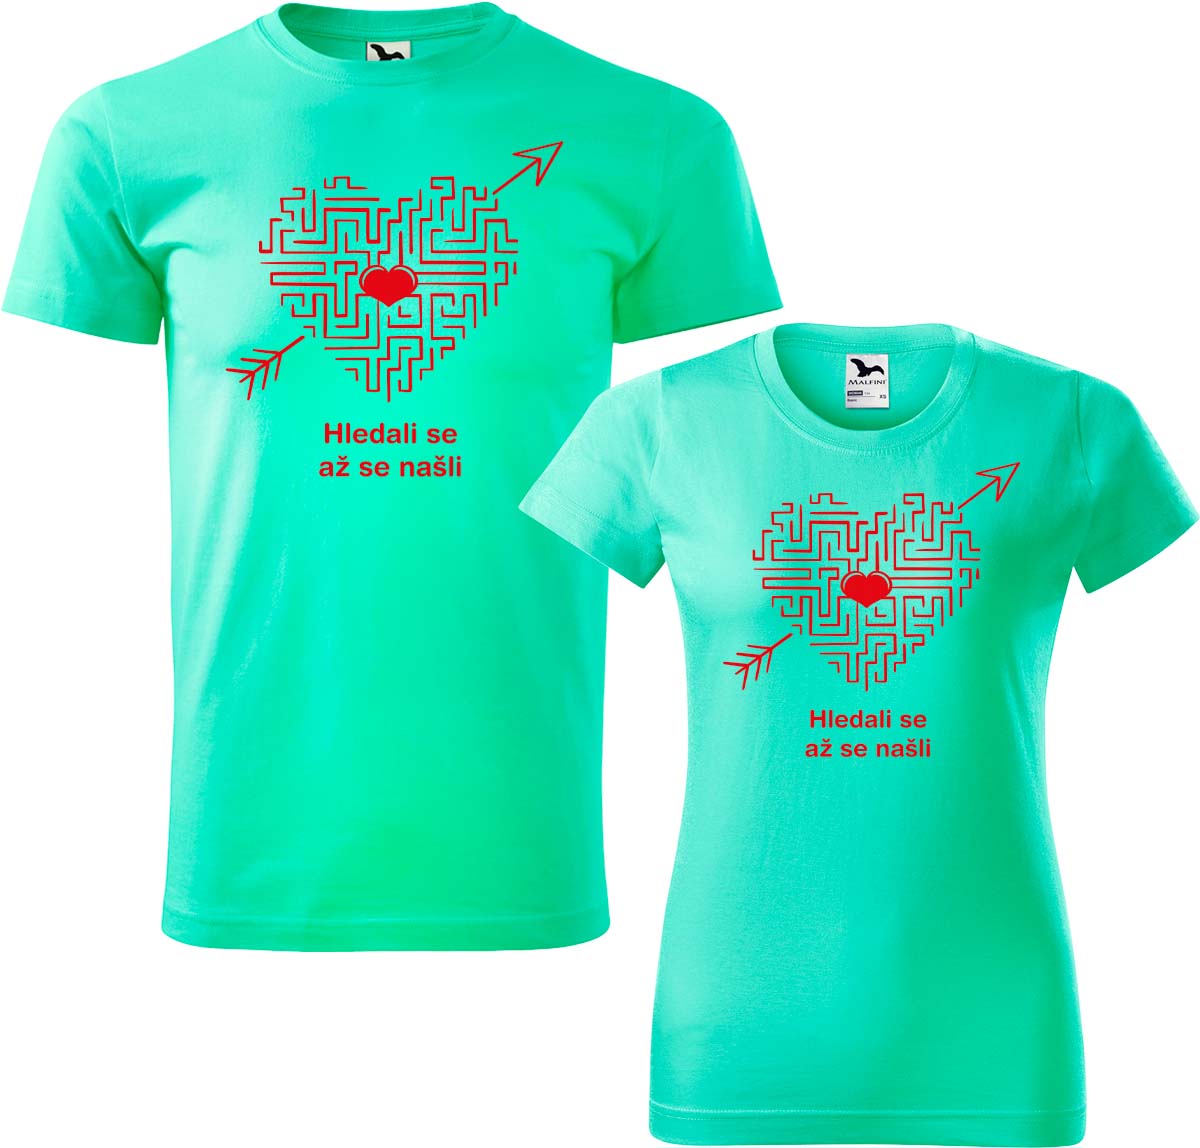 Trička pro páry - Hledali se, až se našli (srdce) Barva: Mátová (95), Velikost dámské tričko: 3XL, Velikost pánské tričko: 4XL